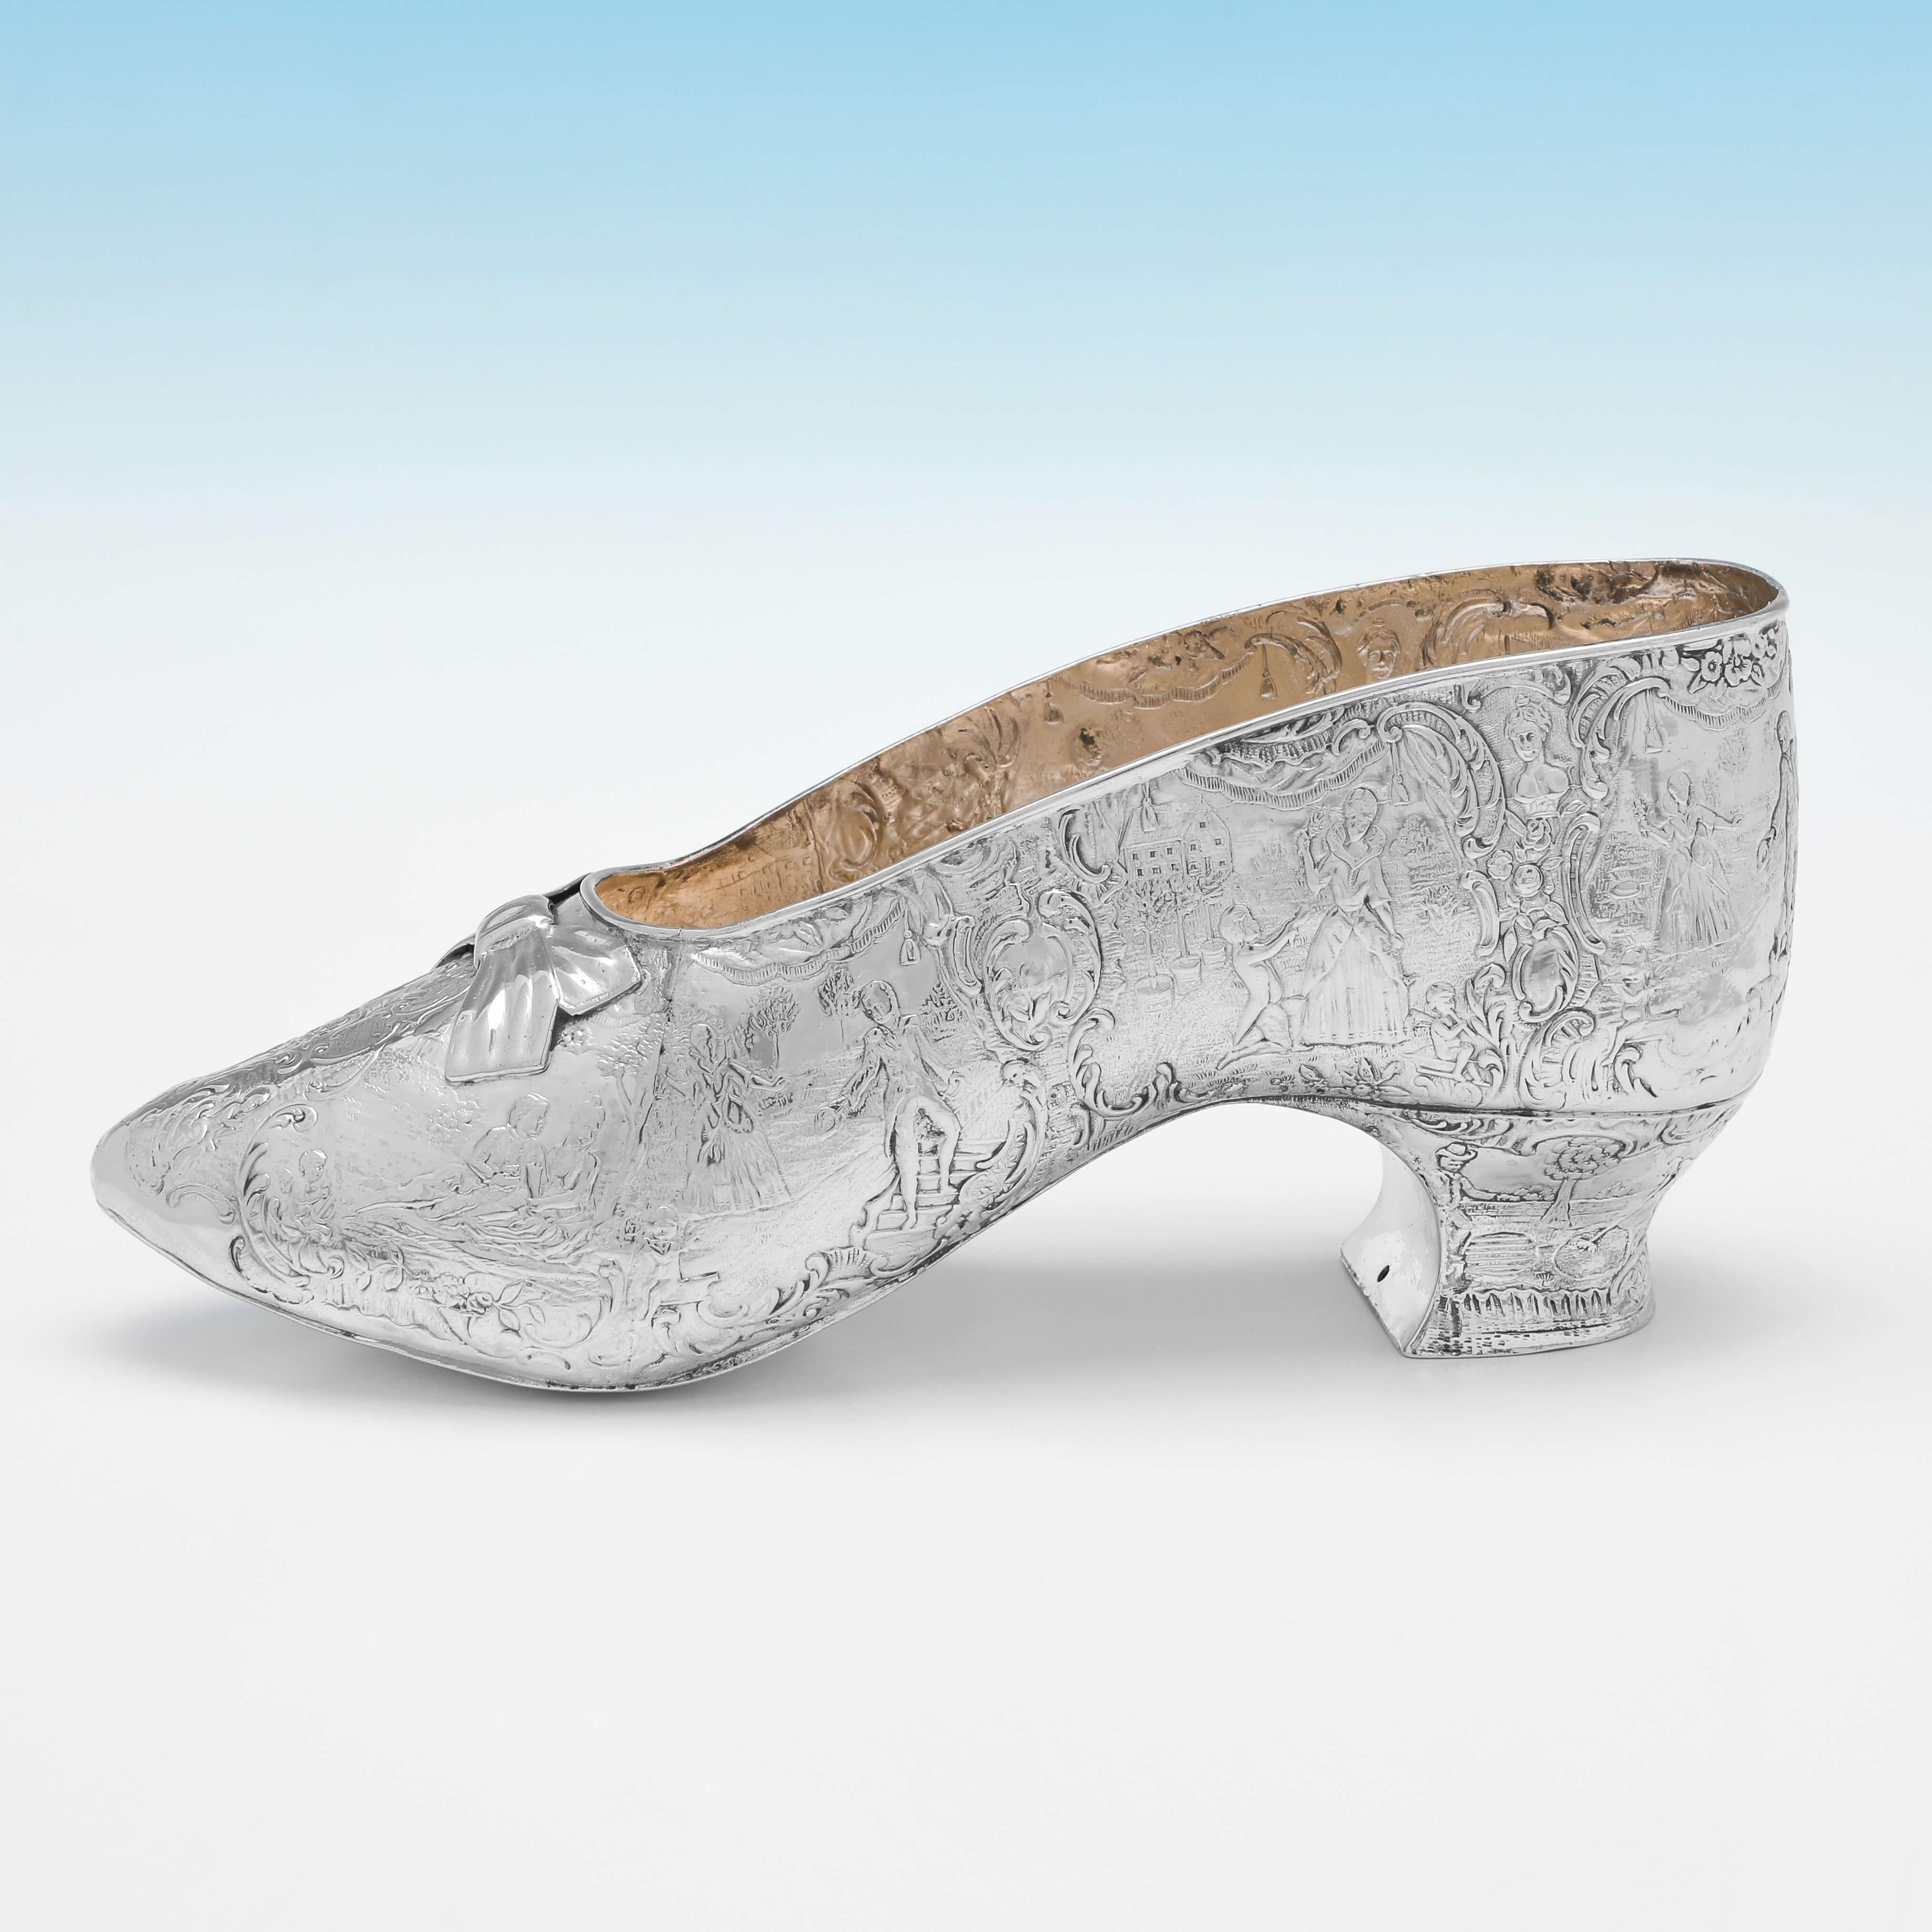 Portant des marques d'importation pour Londres en 1893 par Thomas Goodfellow, ce charmant modèle de chaussure en argent sterling de l'époque victorienne présente un intérieur en verre doré et un magnifique décor ciselé sur toute sa surface. 

Le